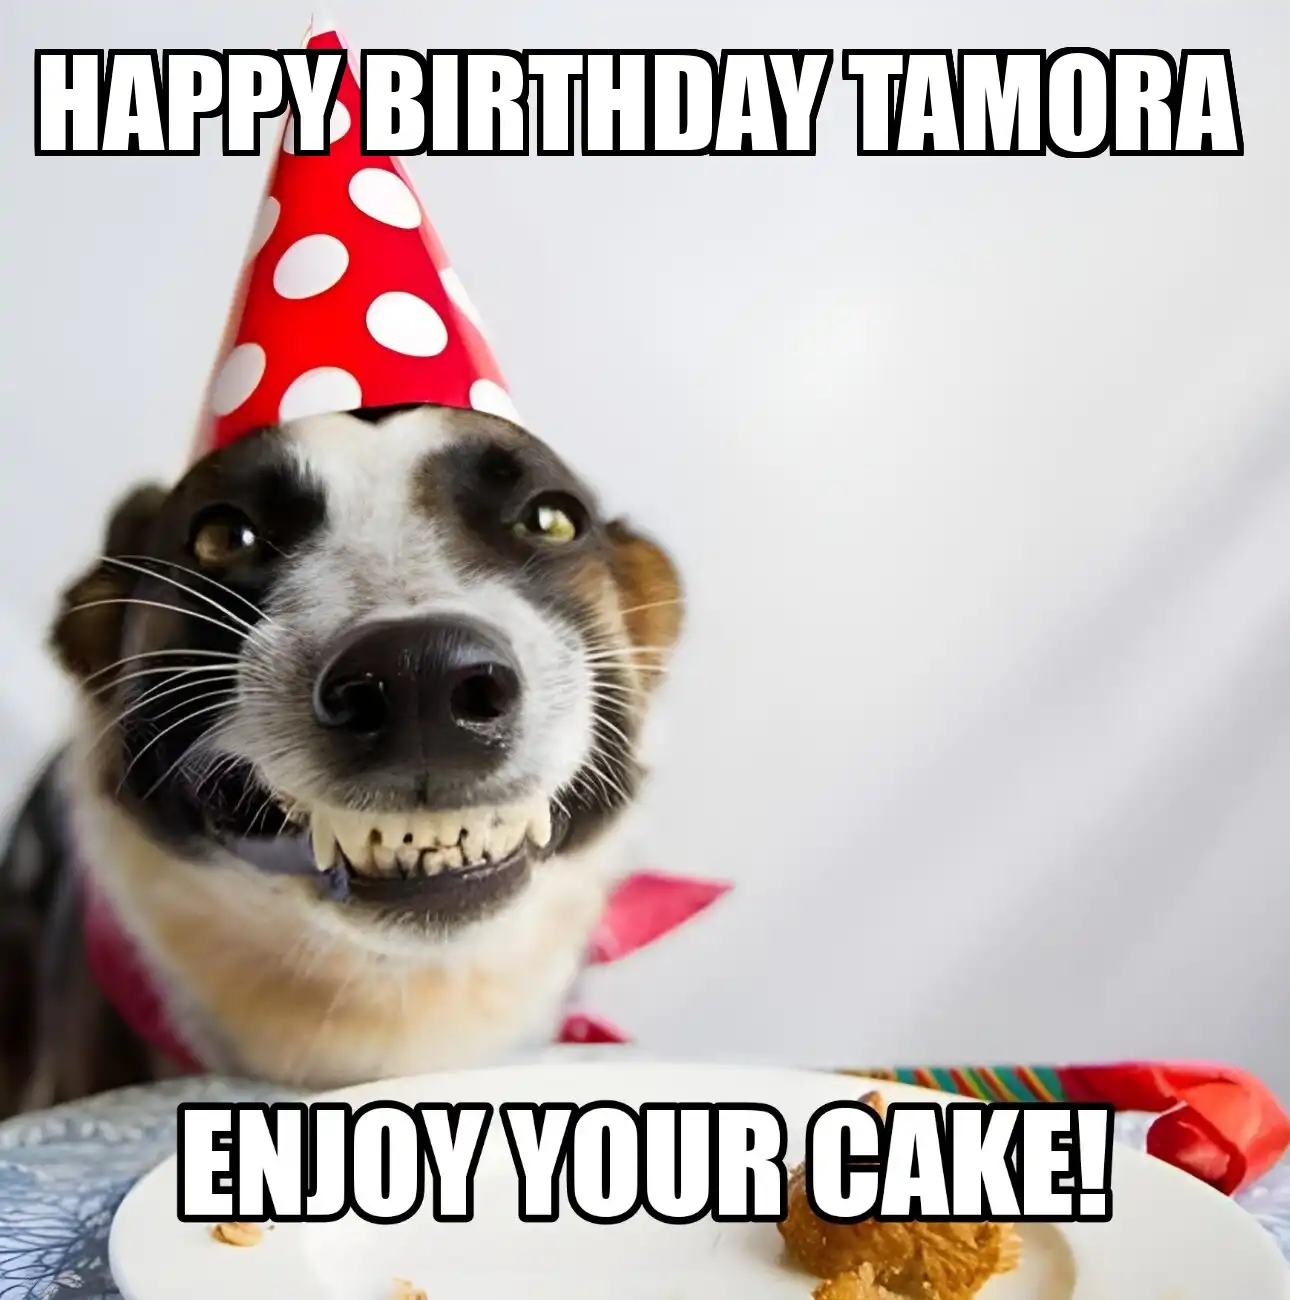 Happy Birthday Tamora Enjoy Your Cake Dog Meme